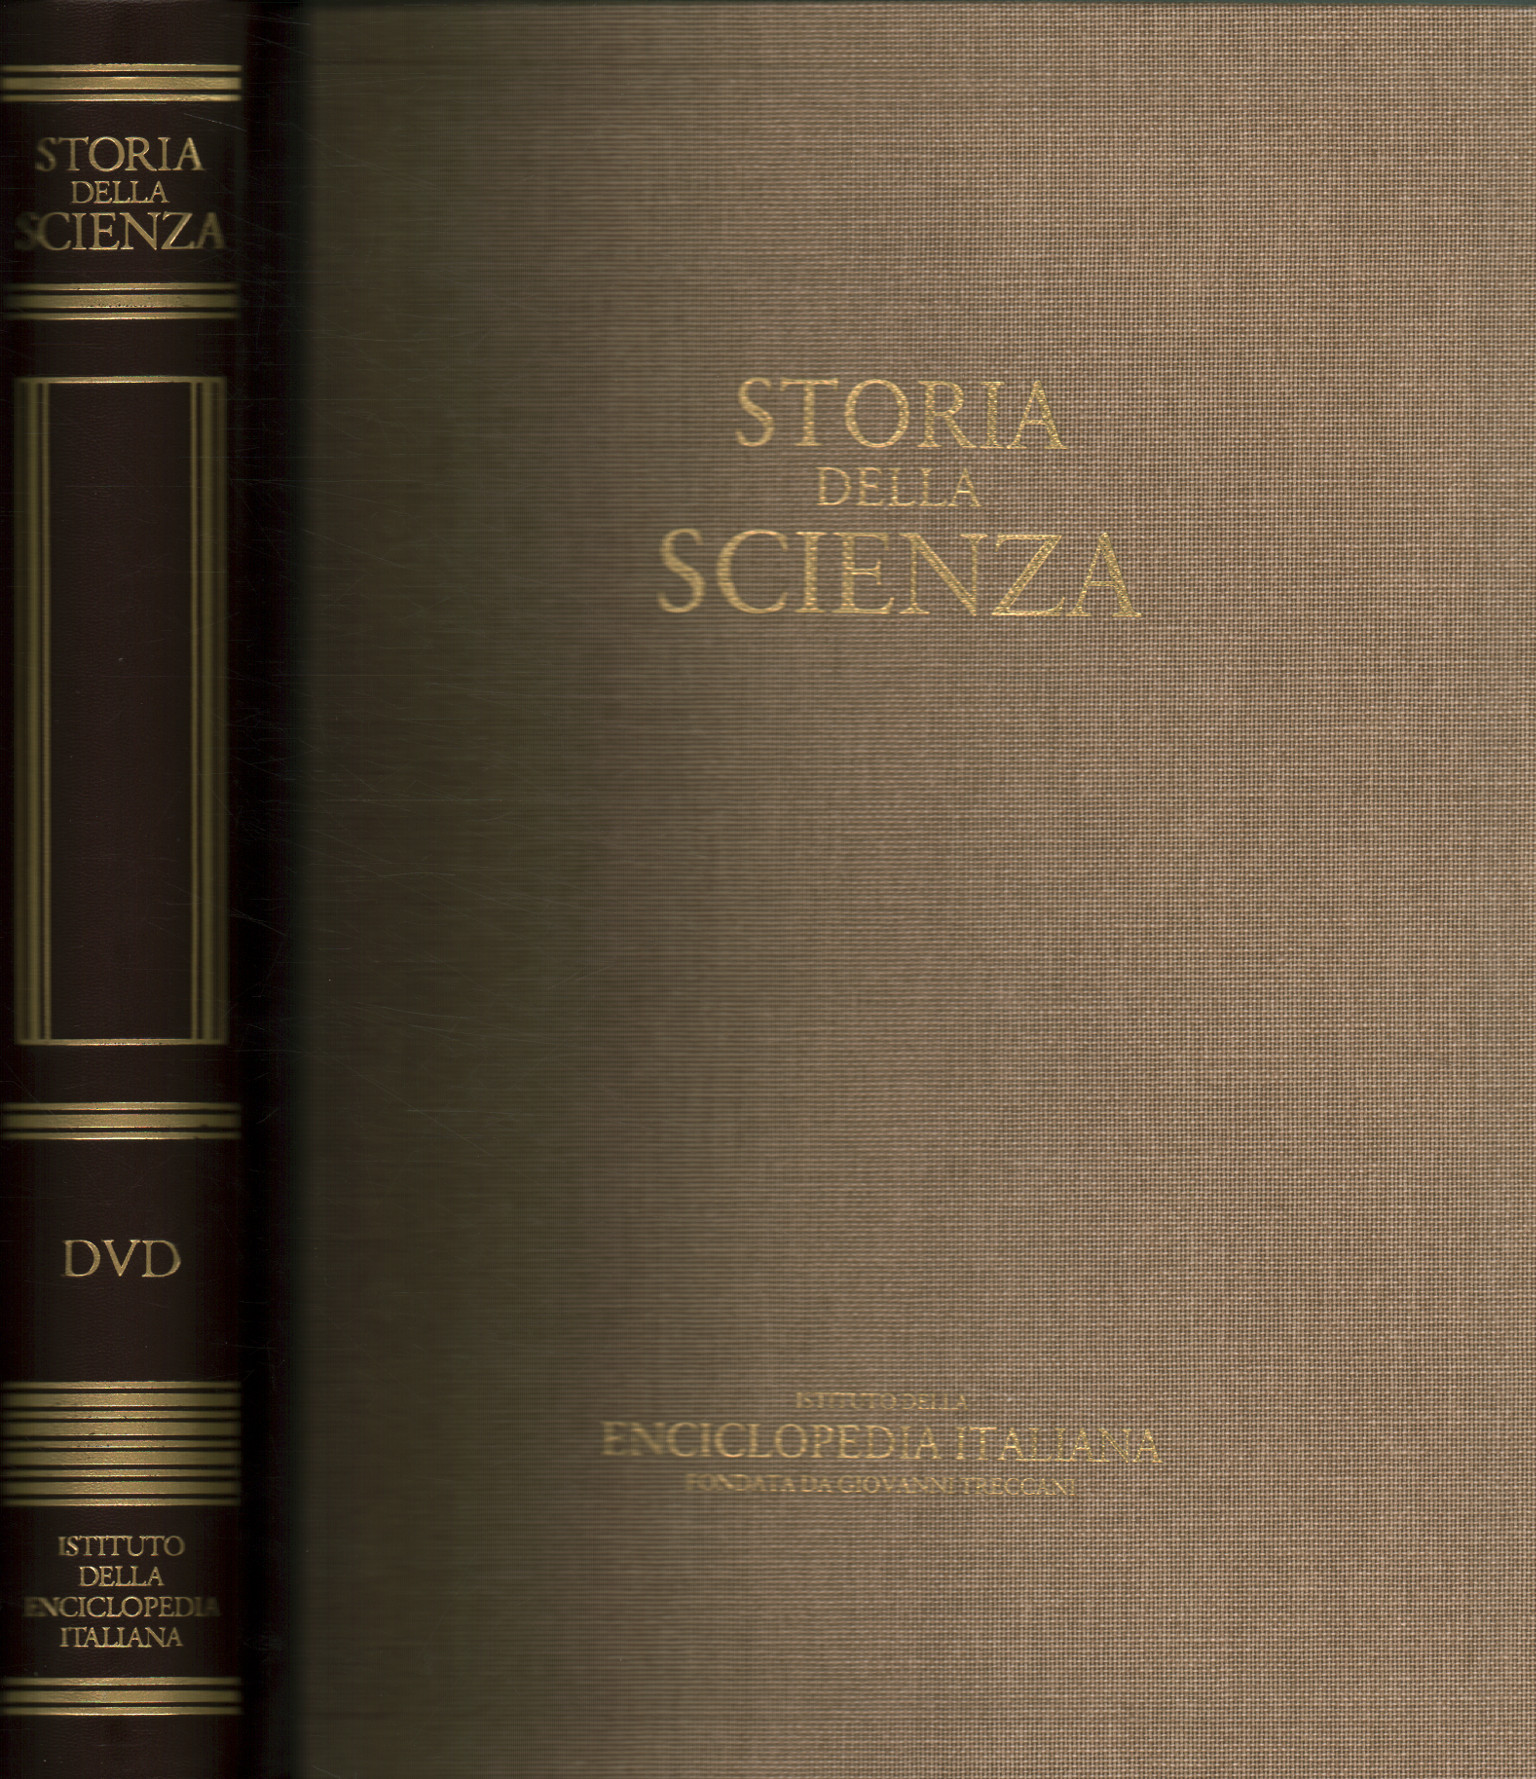 Storia della scienza. DVD,Storia della scienza (con DVD)